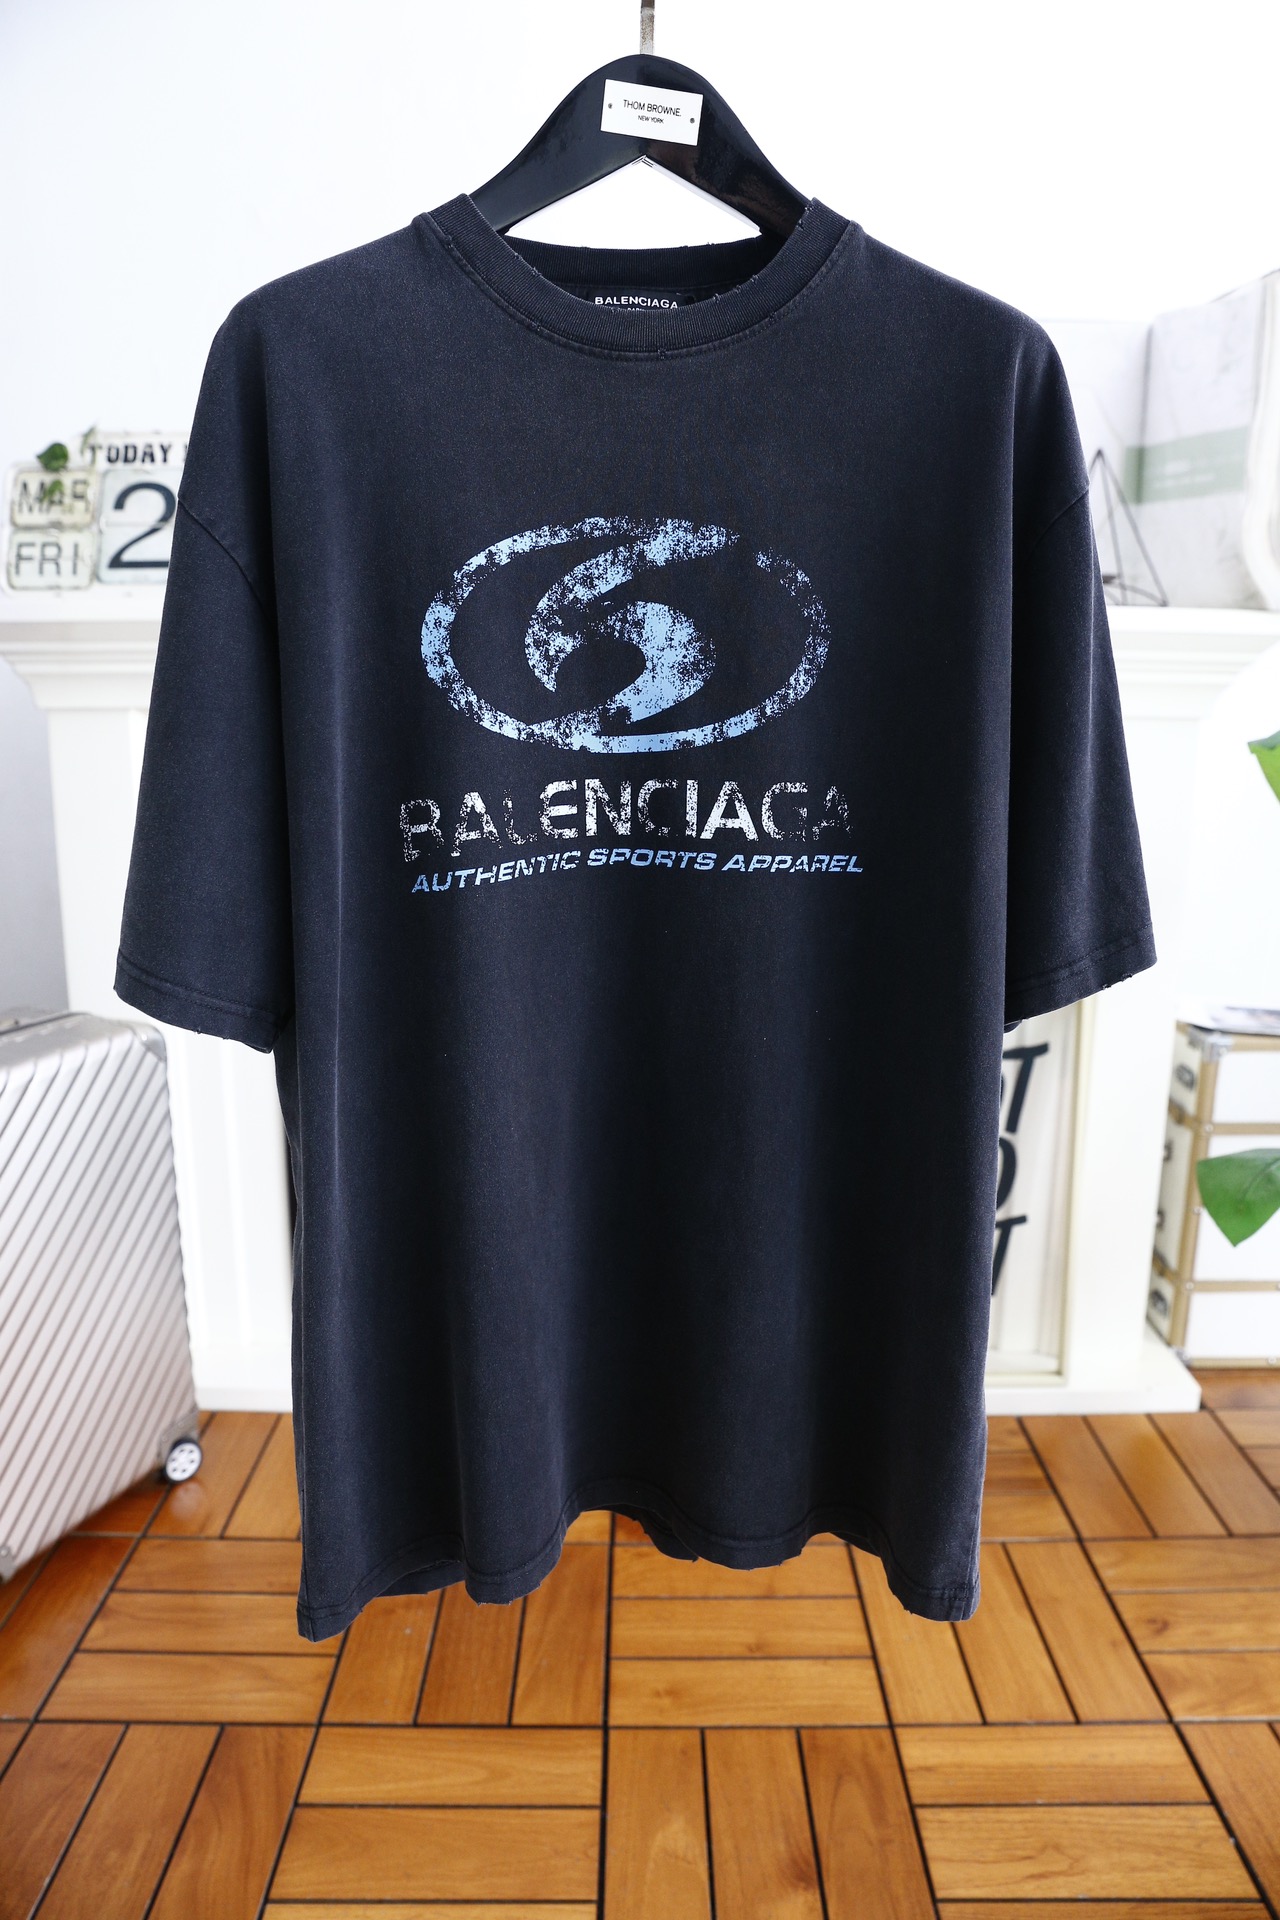 Balenciaga Kleding T-Shirt Unisex Lente/Zomercollectie Korte mouw